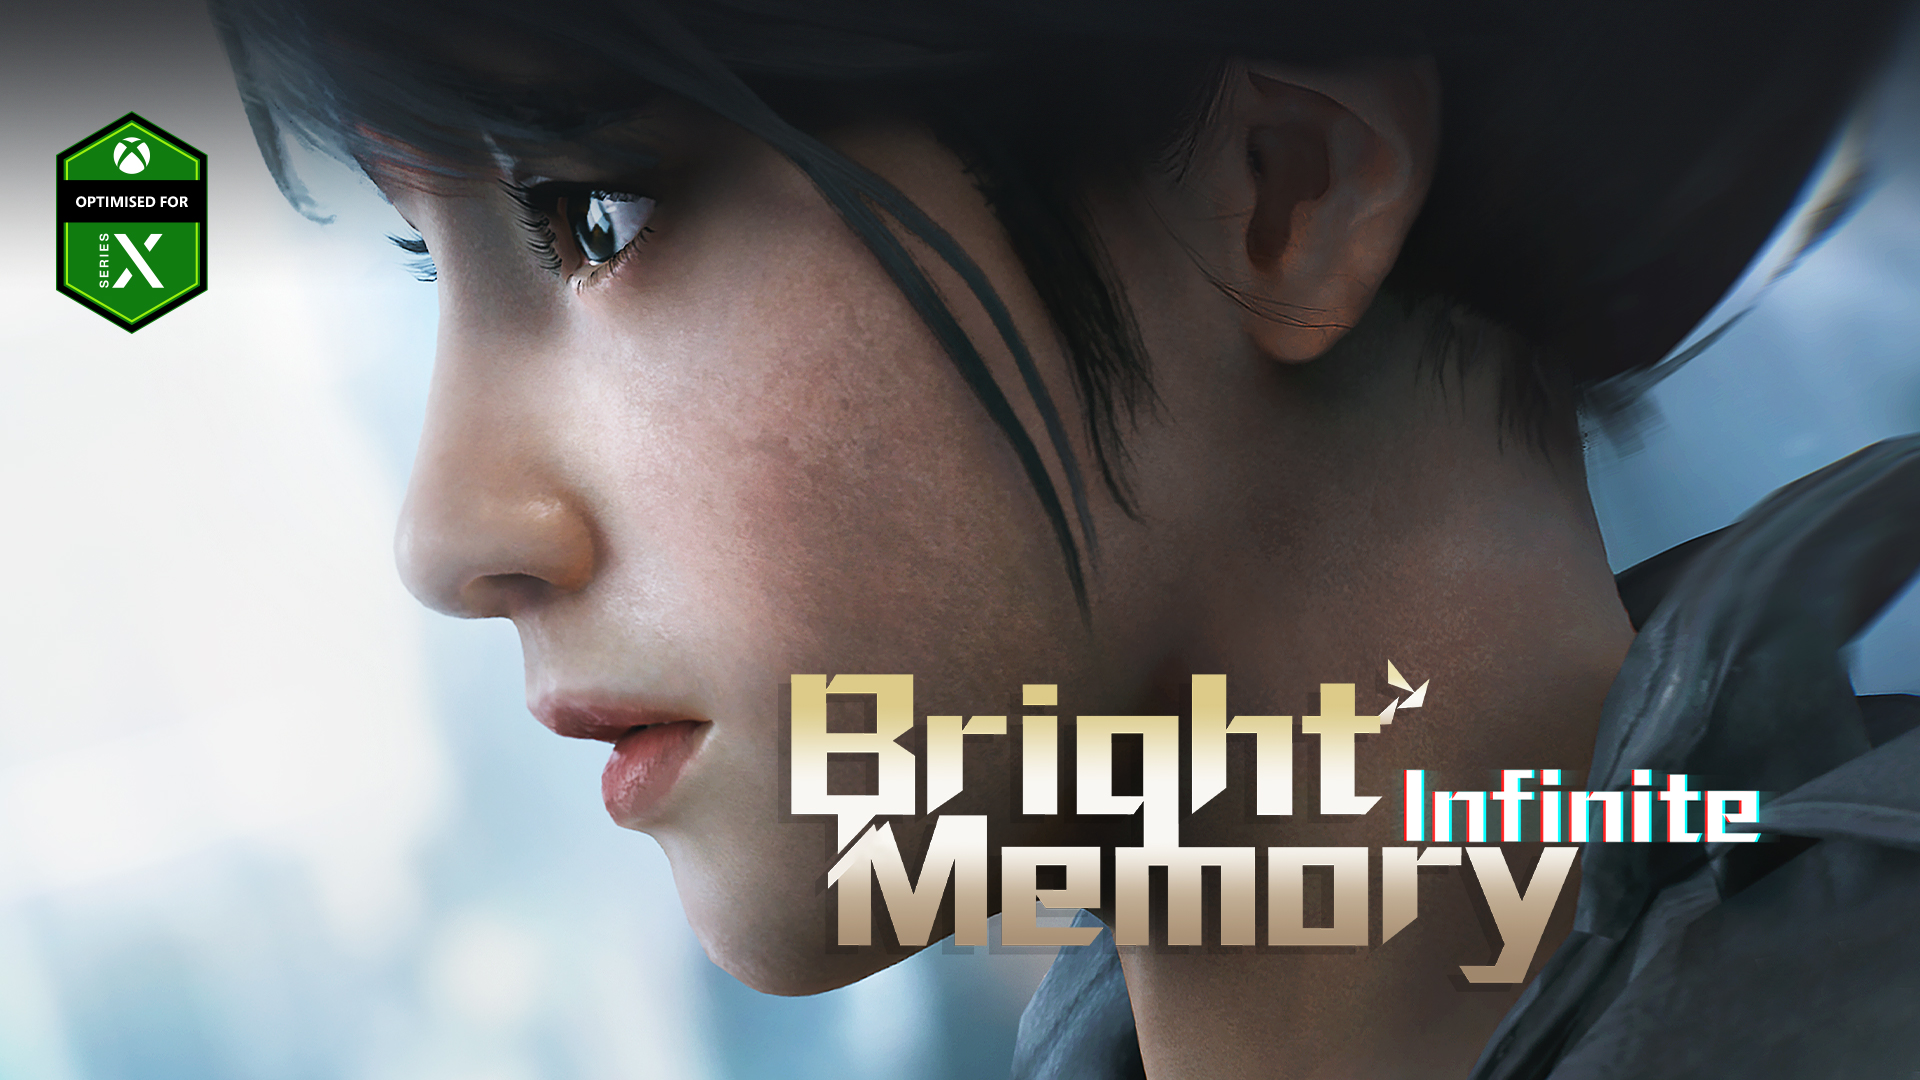 bright memory infinite xbox series x gameplay